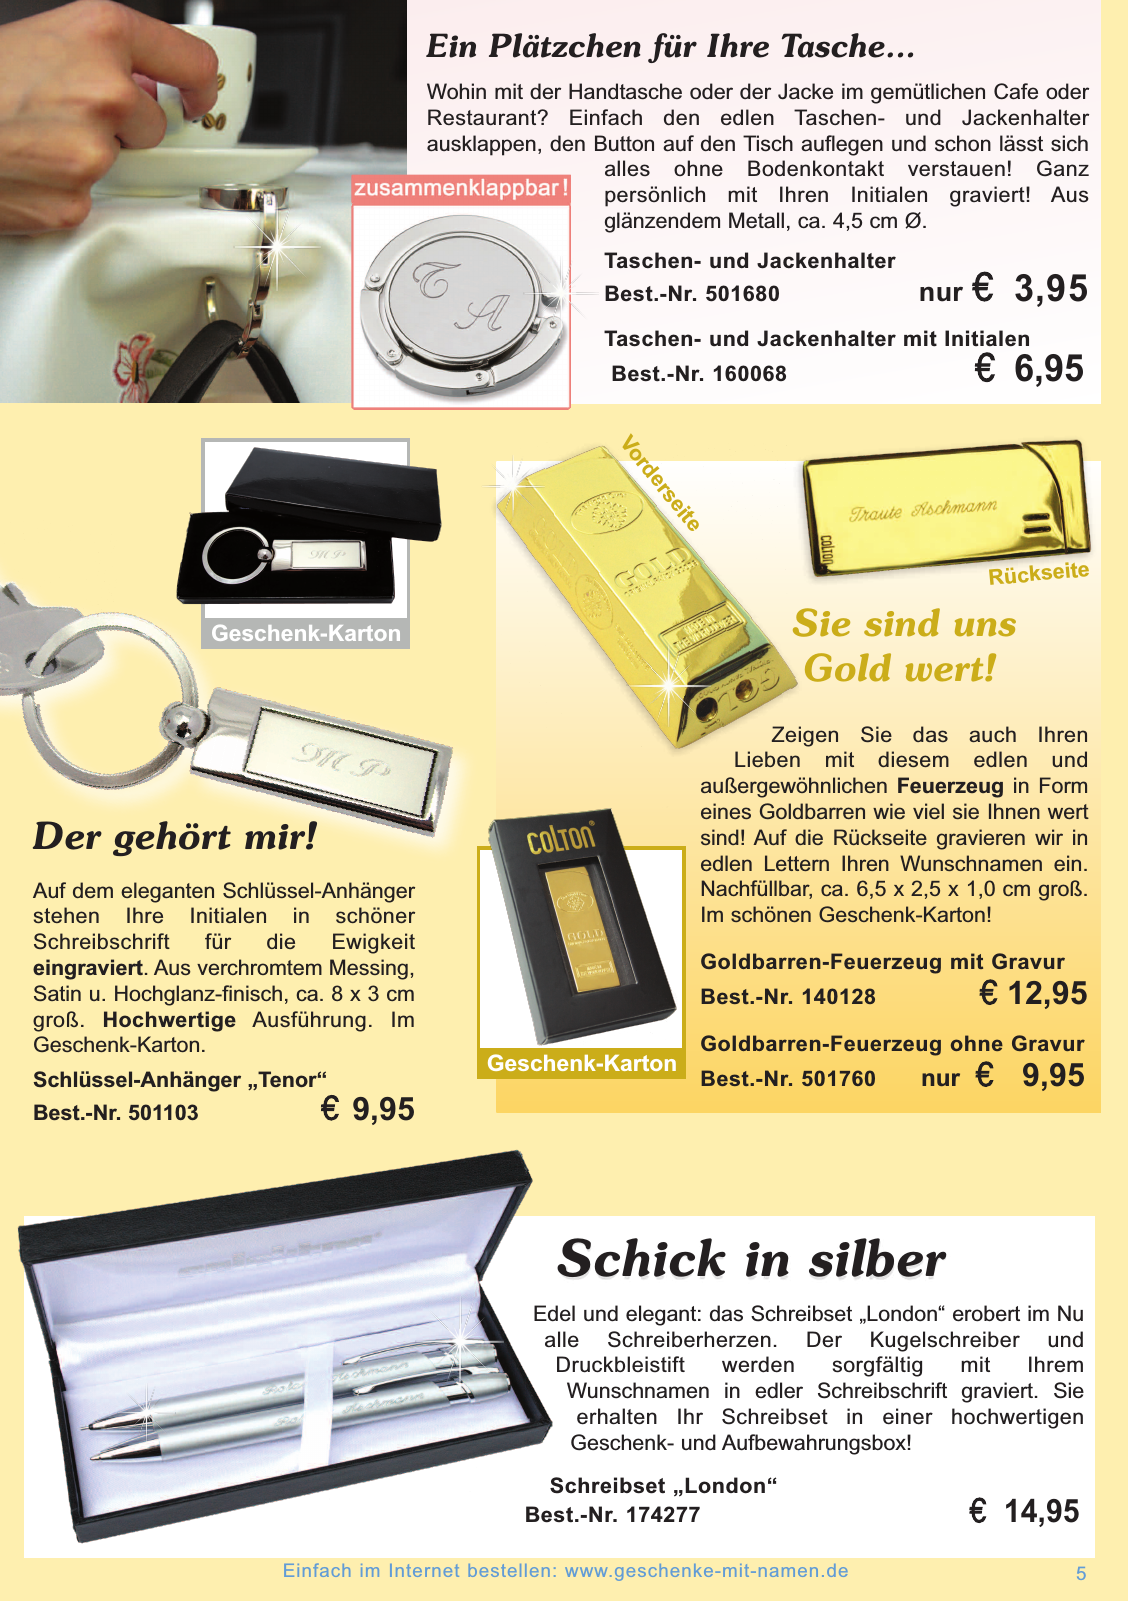 Vorschau Geschenke mit Namen Katalog 2014 / 2015 Seite 5